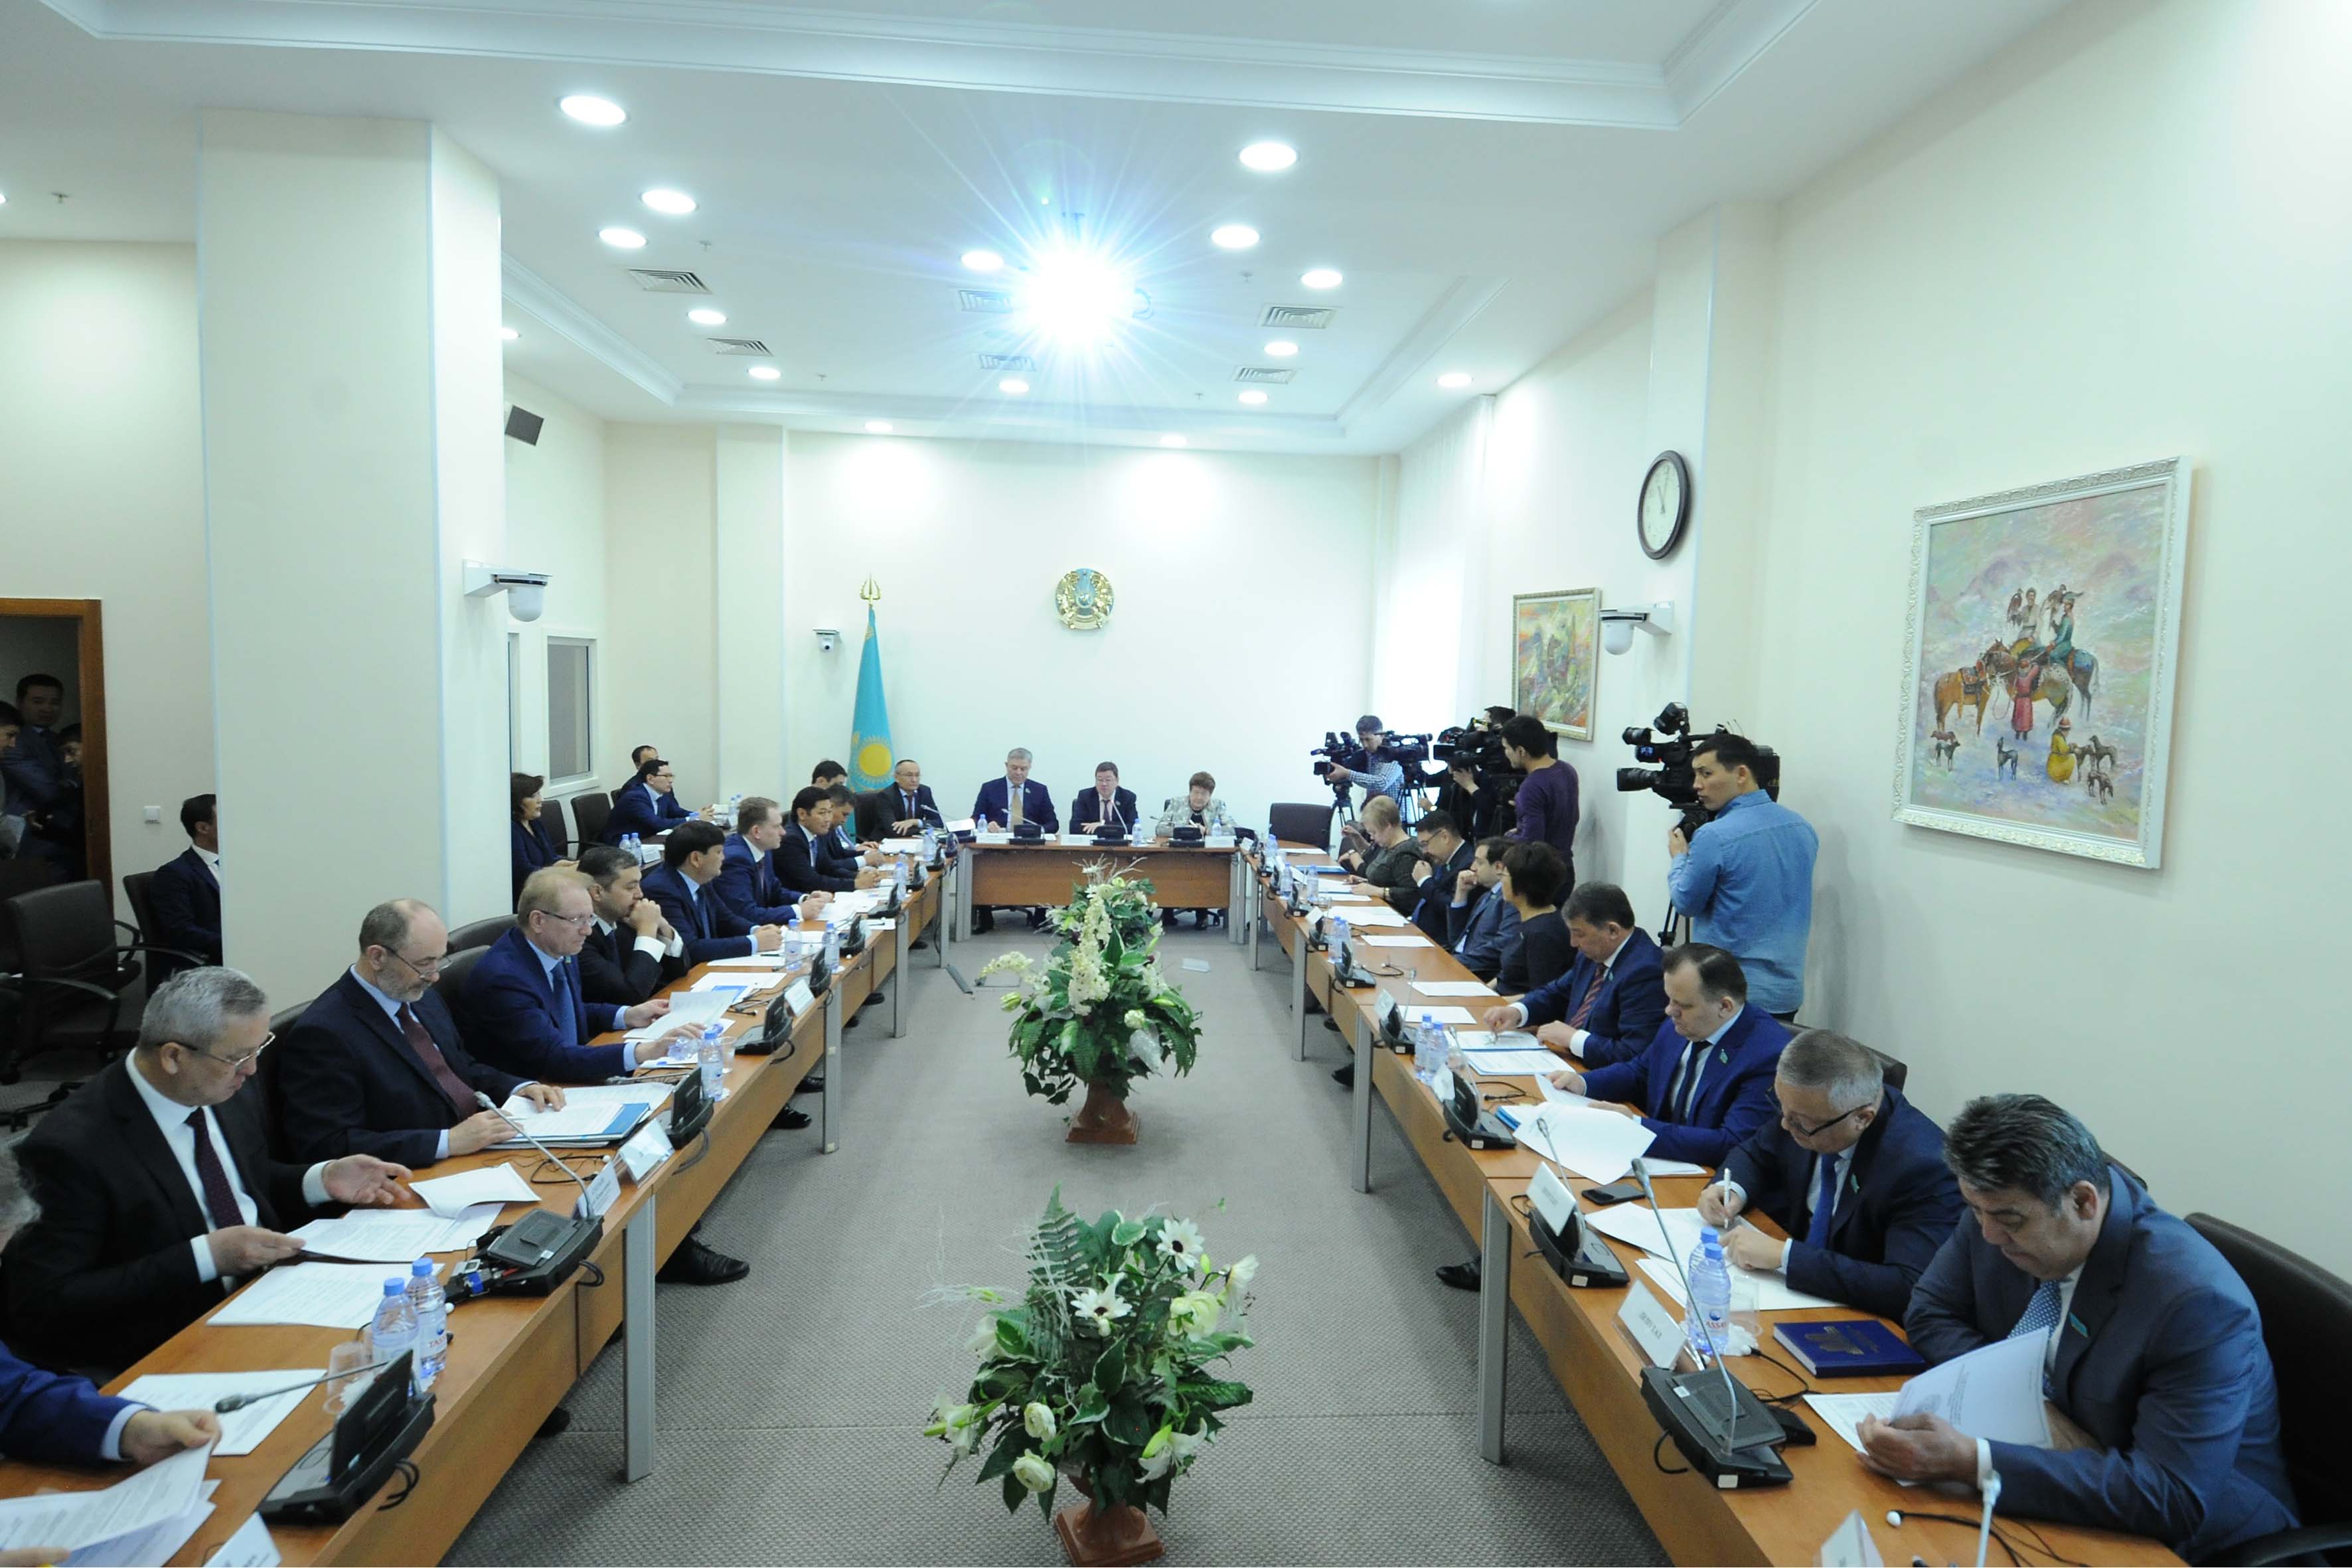 Провел круглый стол на тему: «Обеспечение энергетической безопасности Казахстана путем развития газотранспортной инфраструктуры страны».